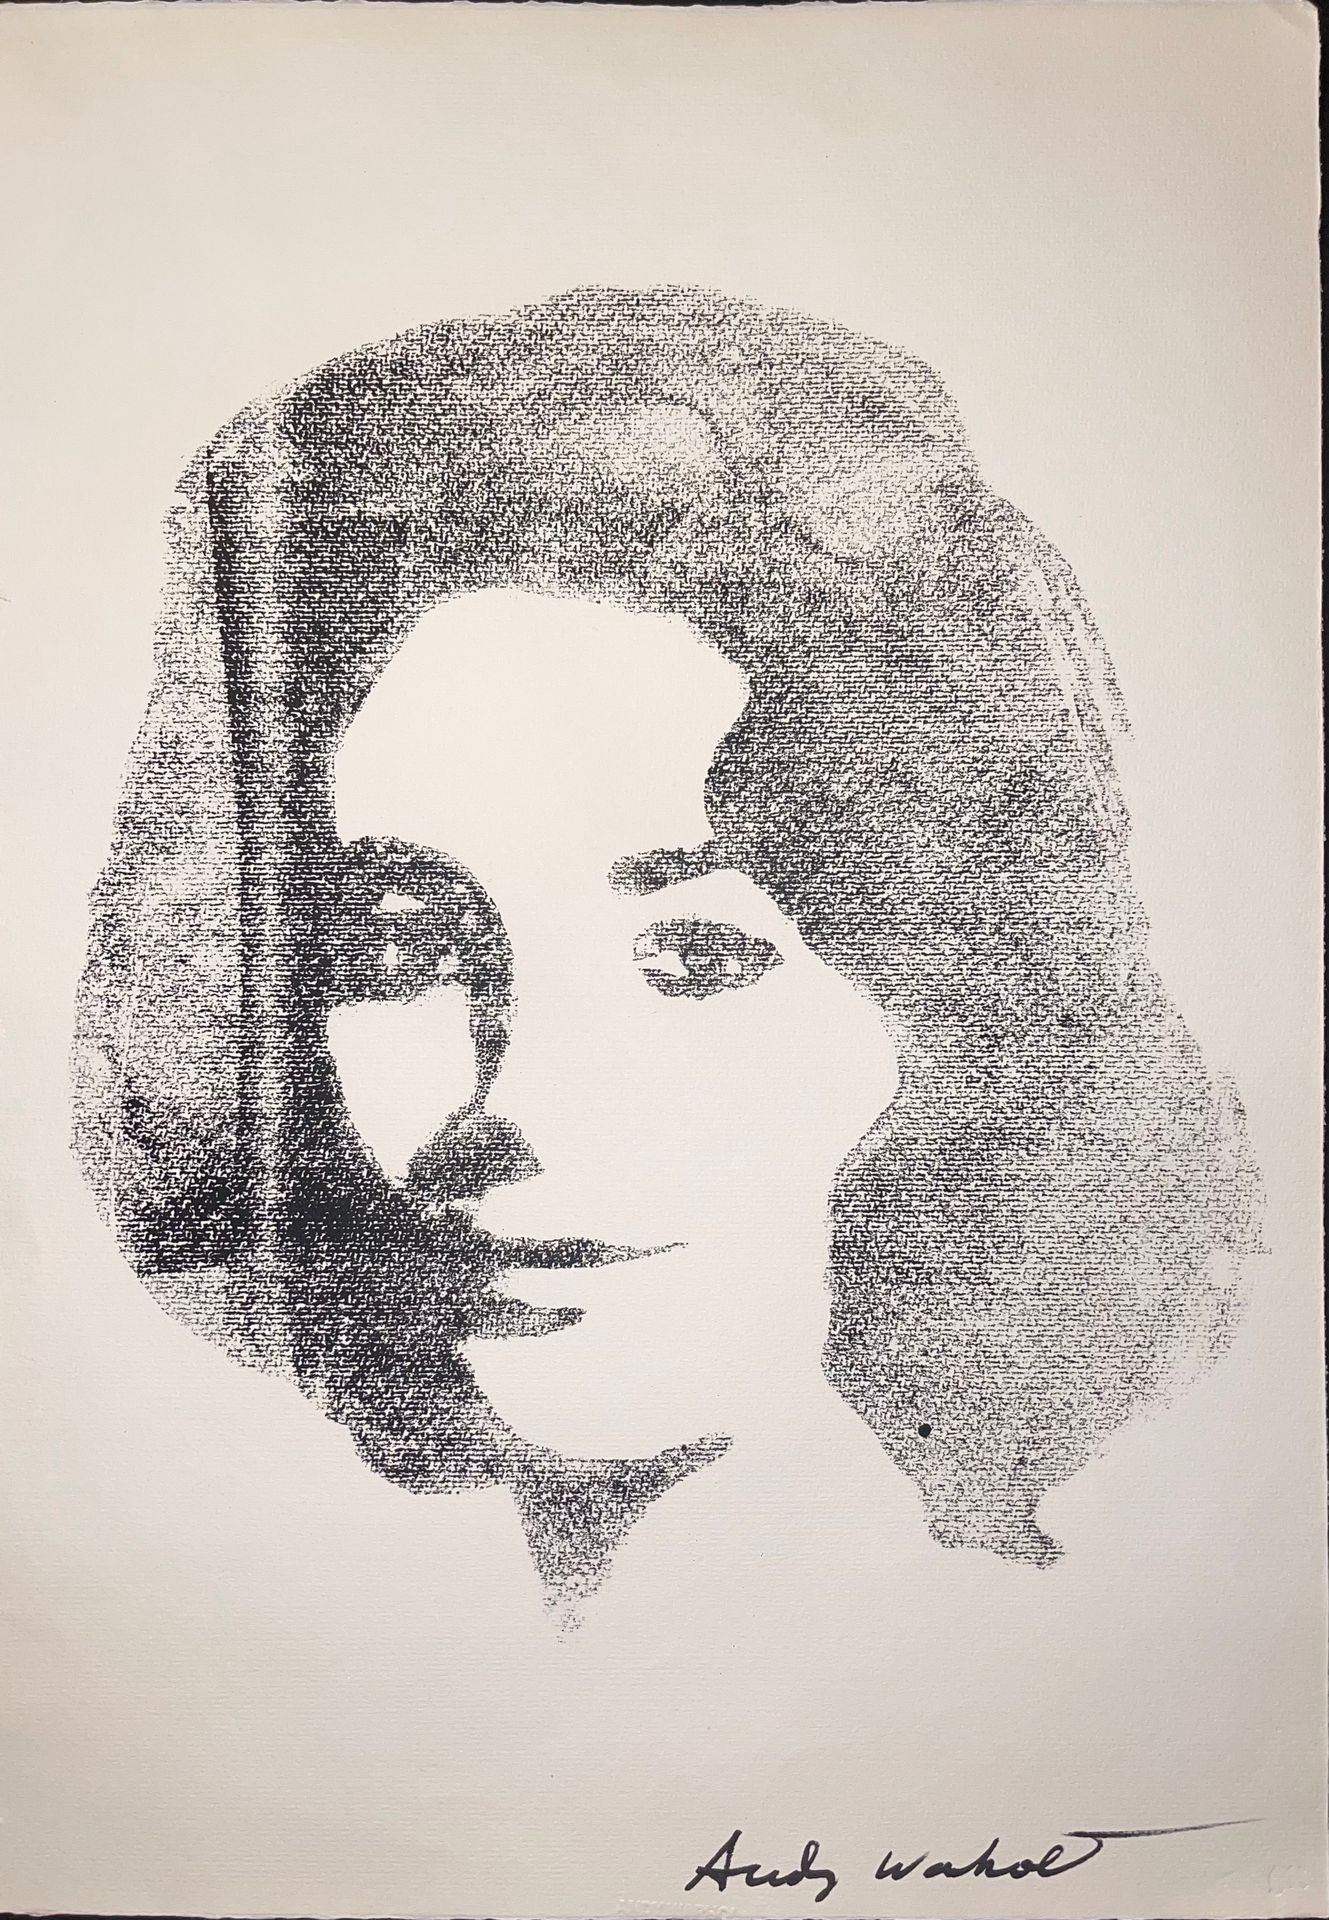 Andy Warhol (Attr.) Liz Taylor - 罕见的纸上水墨试印。右下方有黑色标记的签名 "安迪-沃霍尔"。作品中央下方有 "安迪-沃霍尔 &hellip;